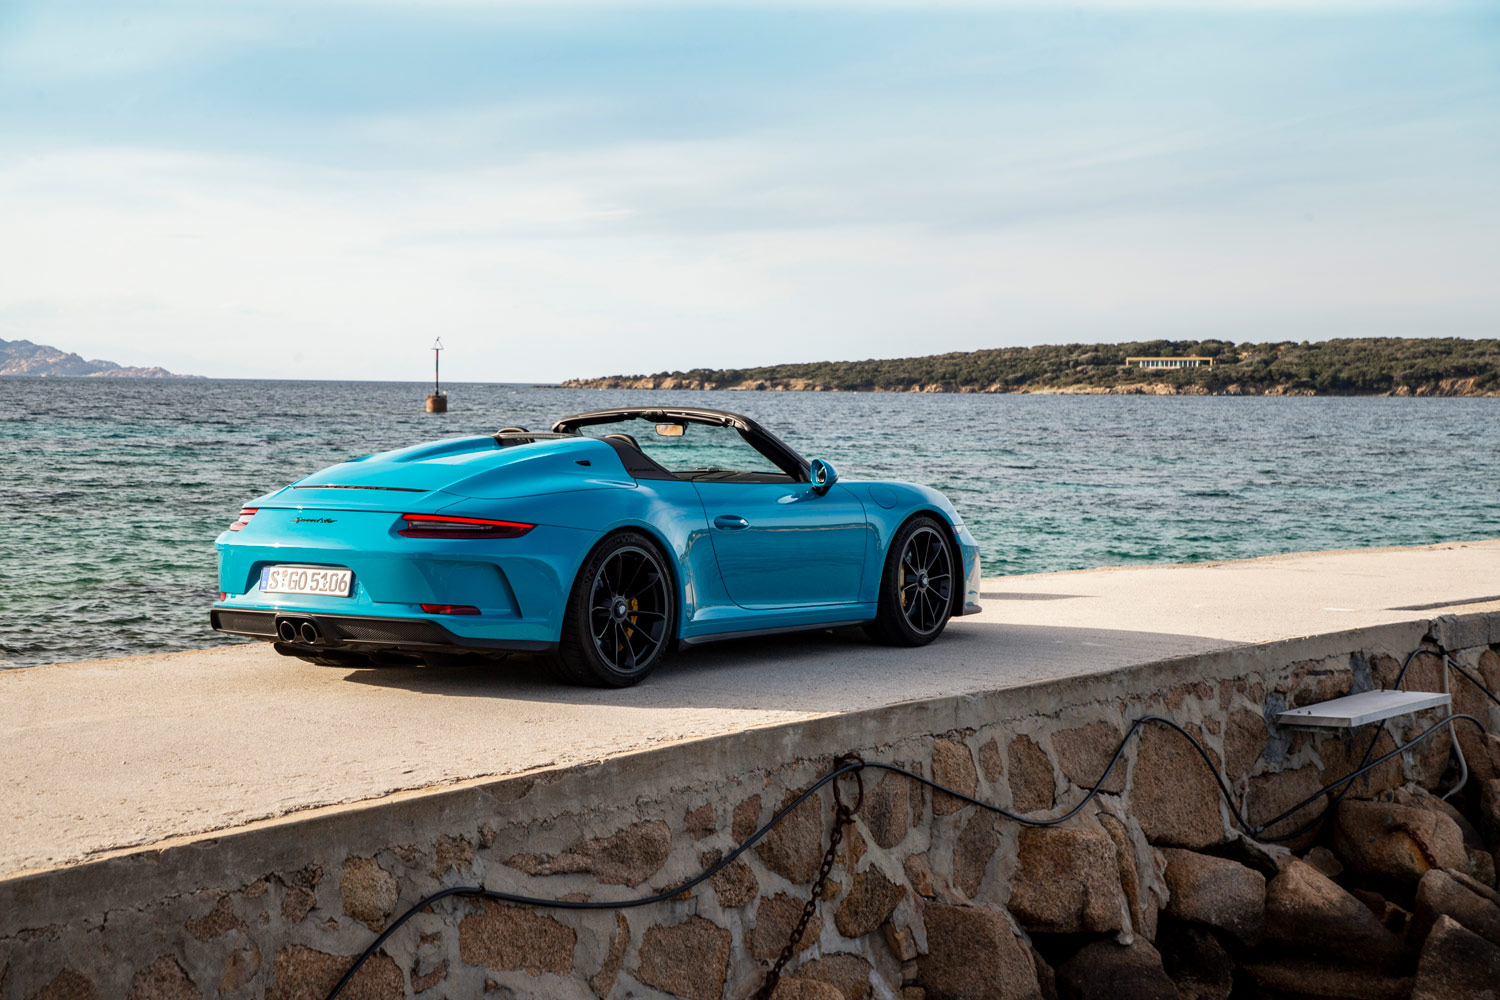 2019 Porsche 911 Speedster in blue overlooking the ocean